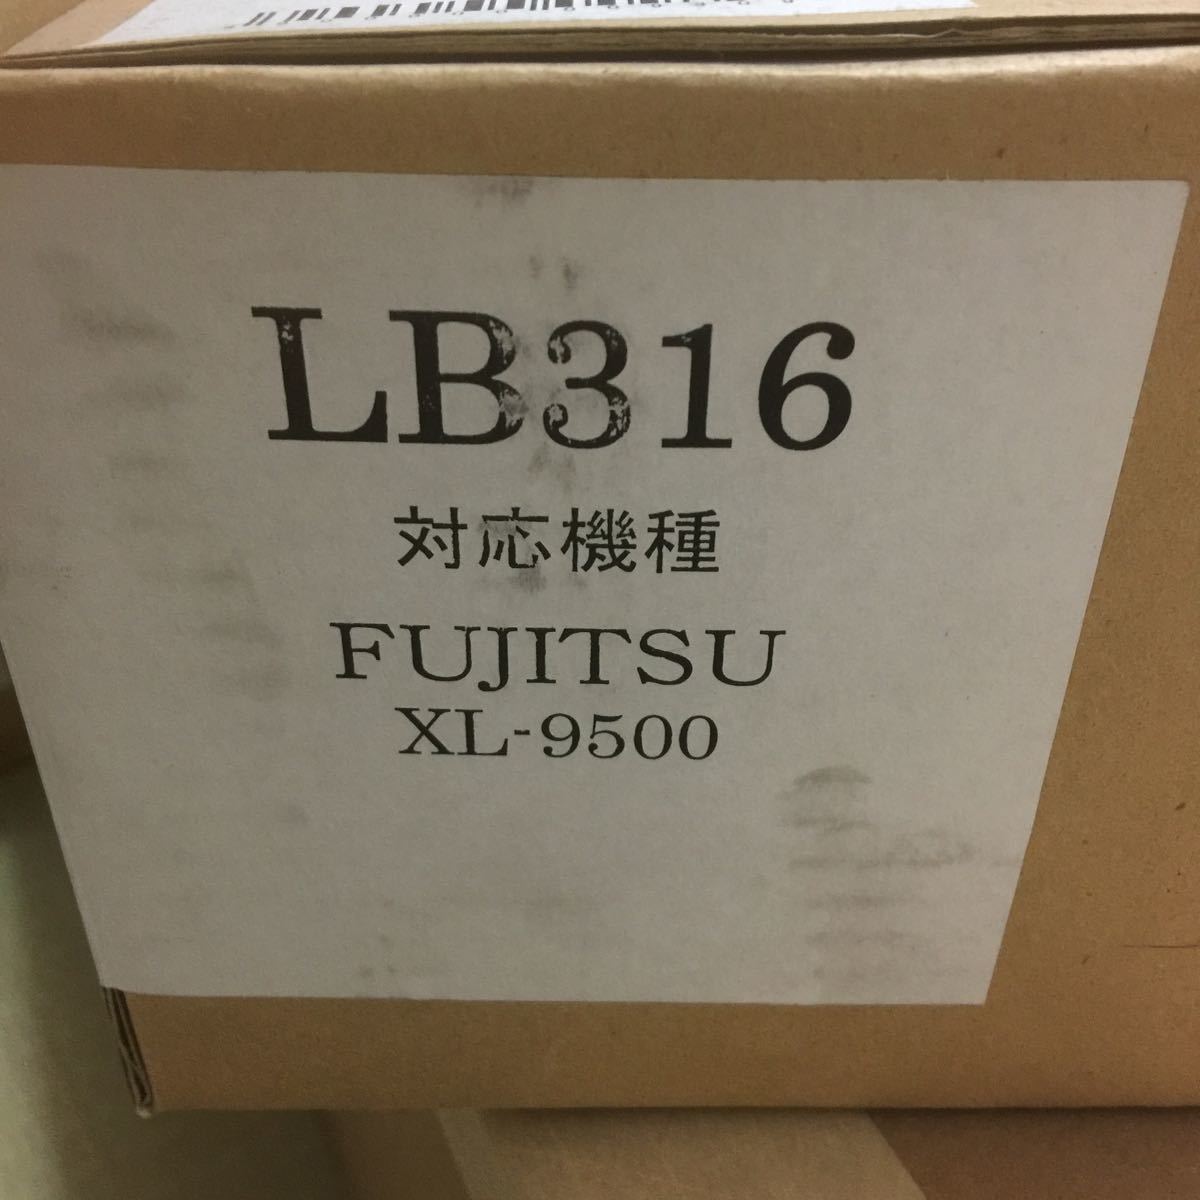 価格.com - 富士通 PrintiaLASER XL-9500 価格比較